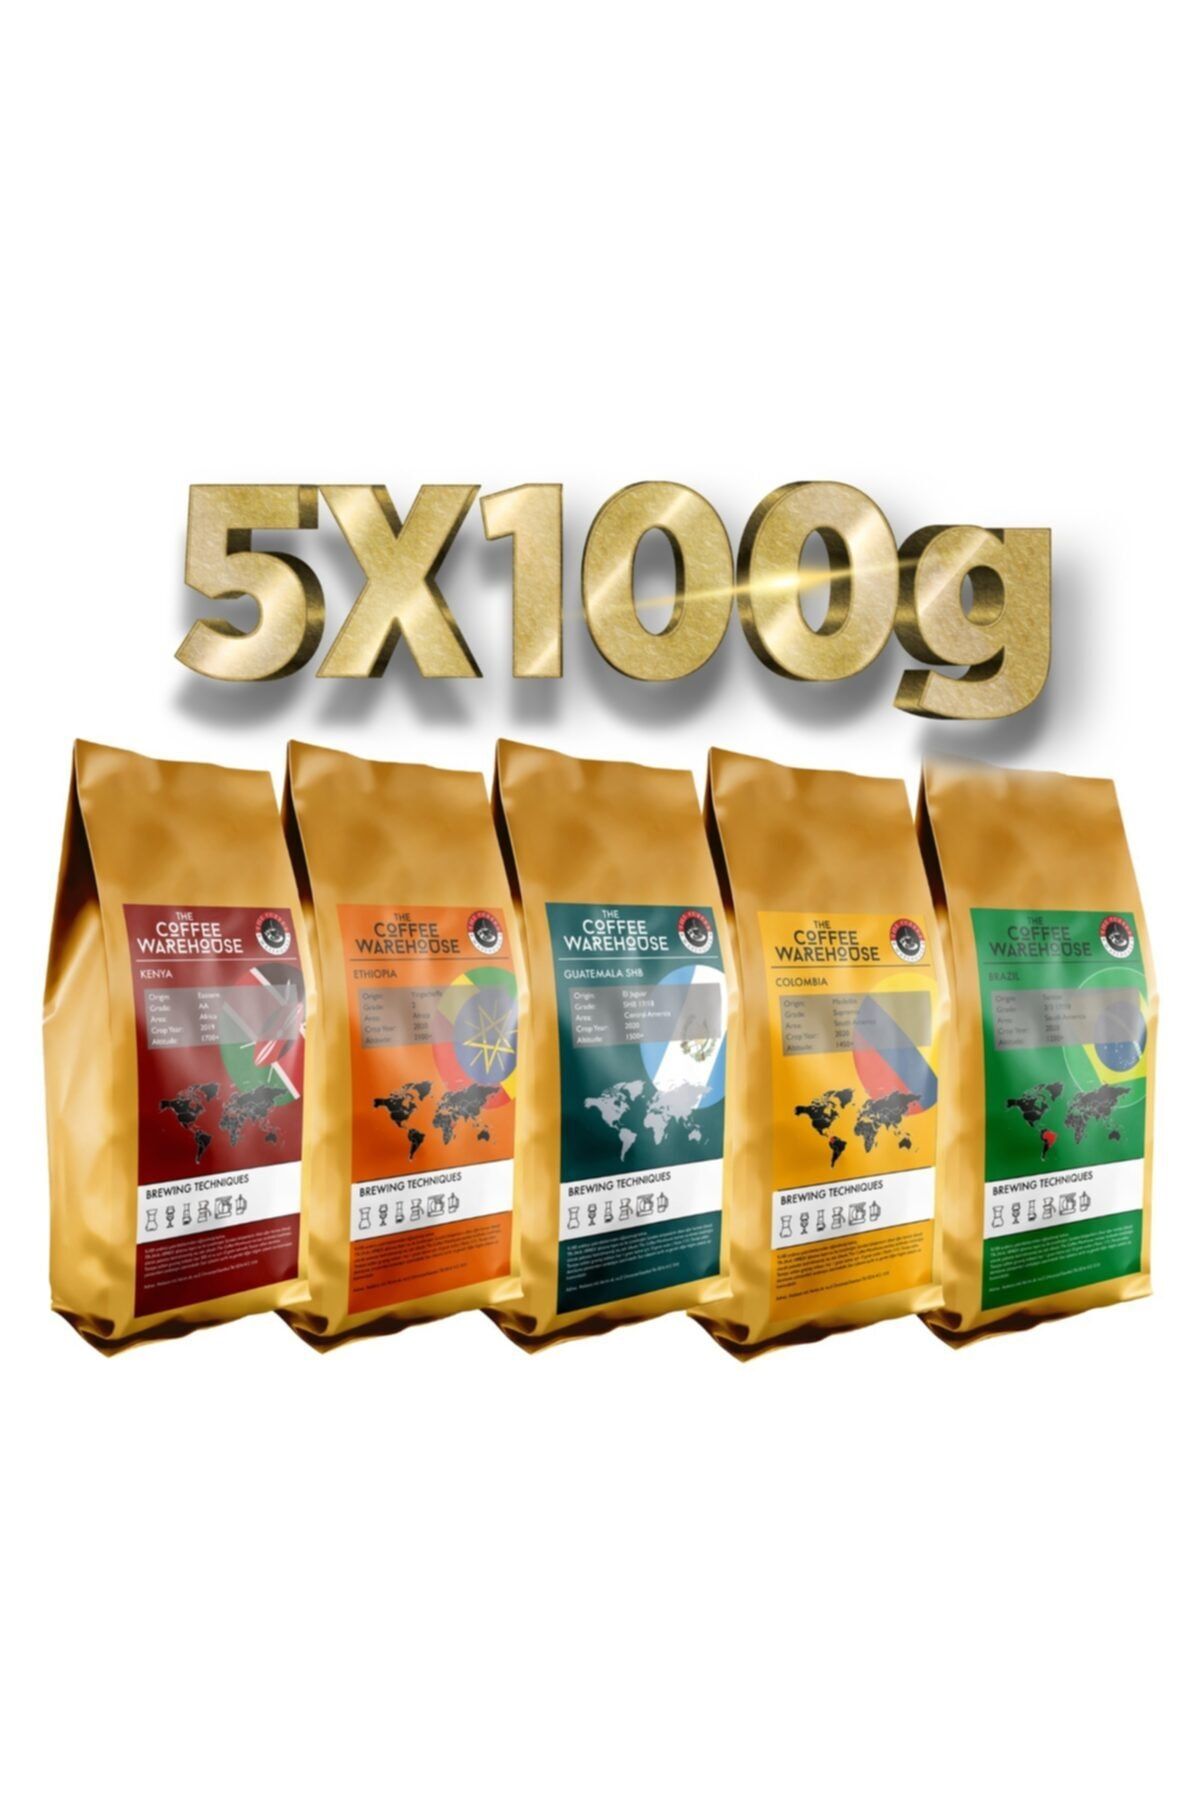 The Coffee Warehouse 5x100g Deneme Paketi 5 Yöresel Kahve (Taze Öğütülmüş)